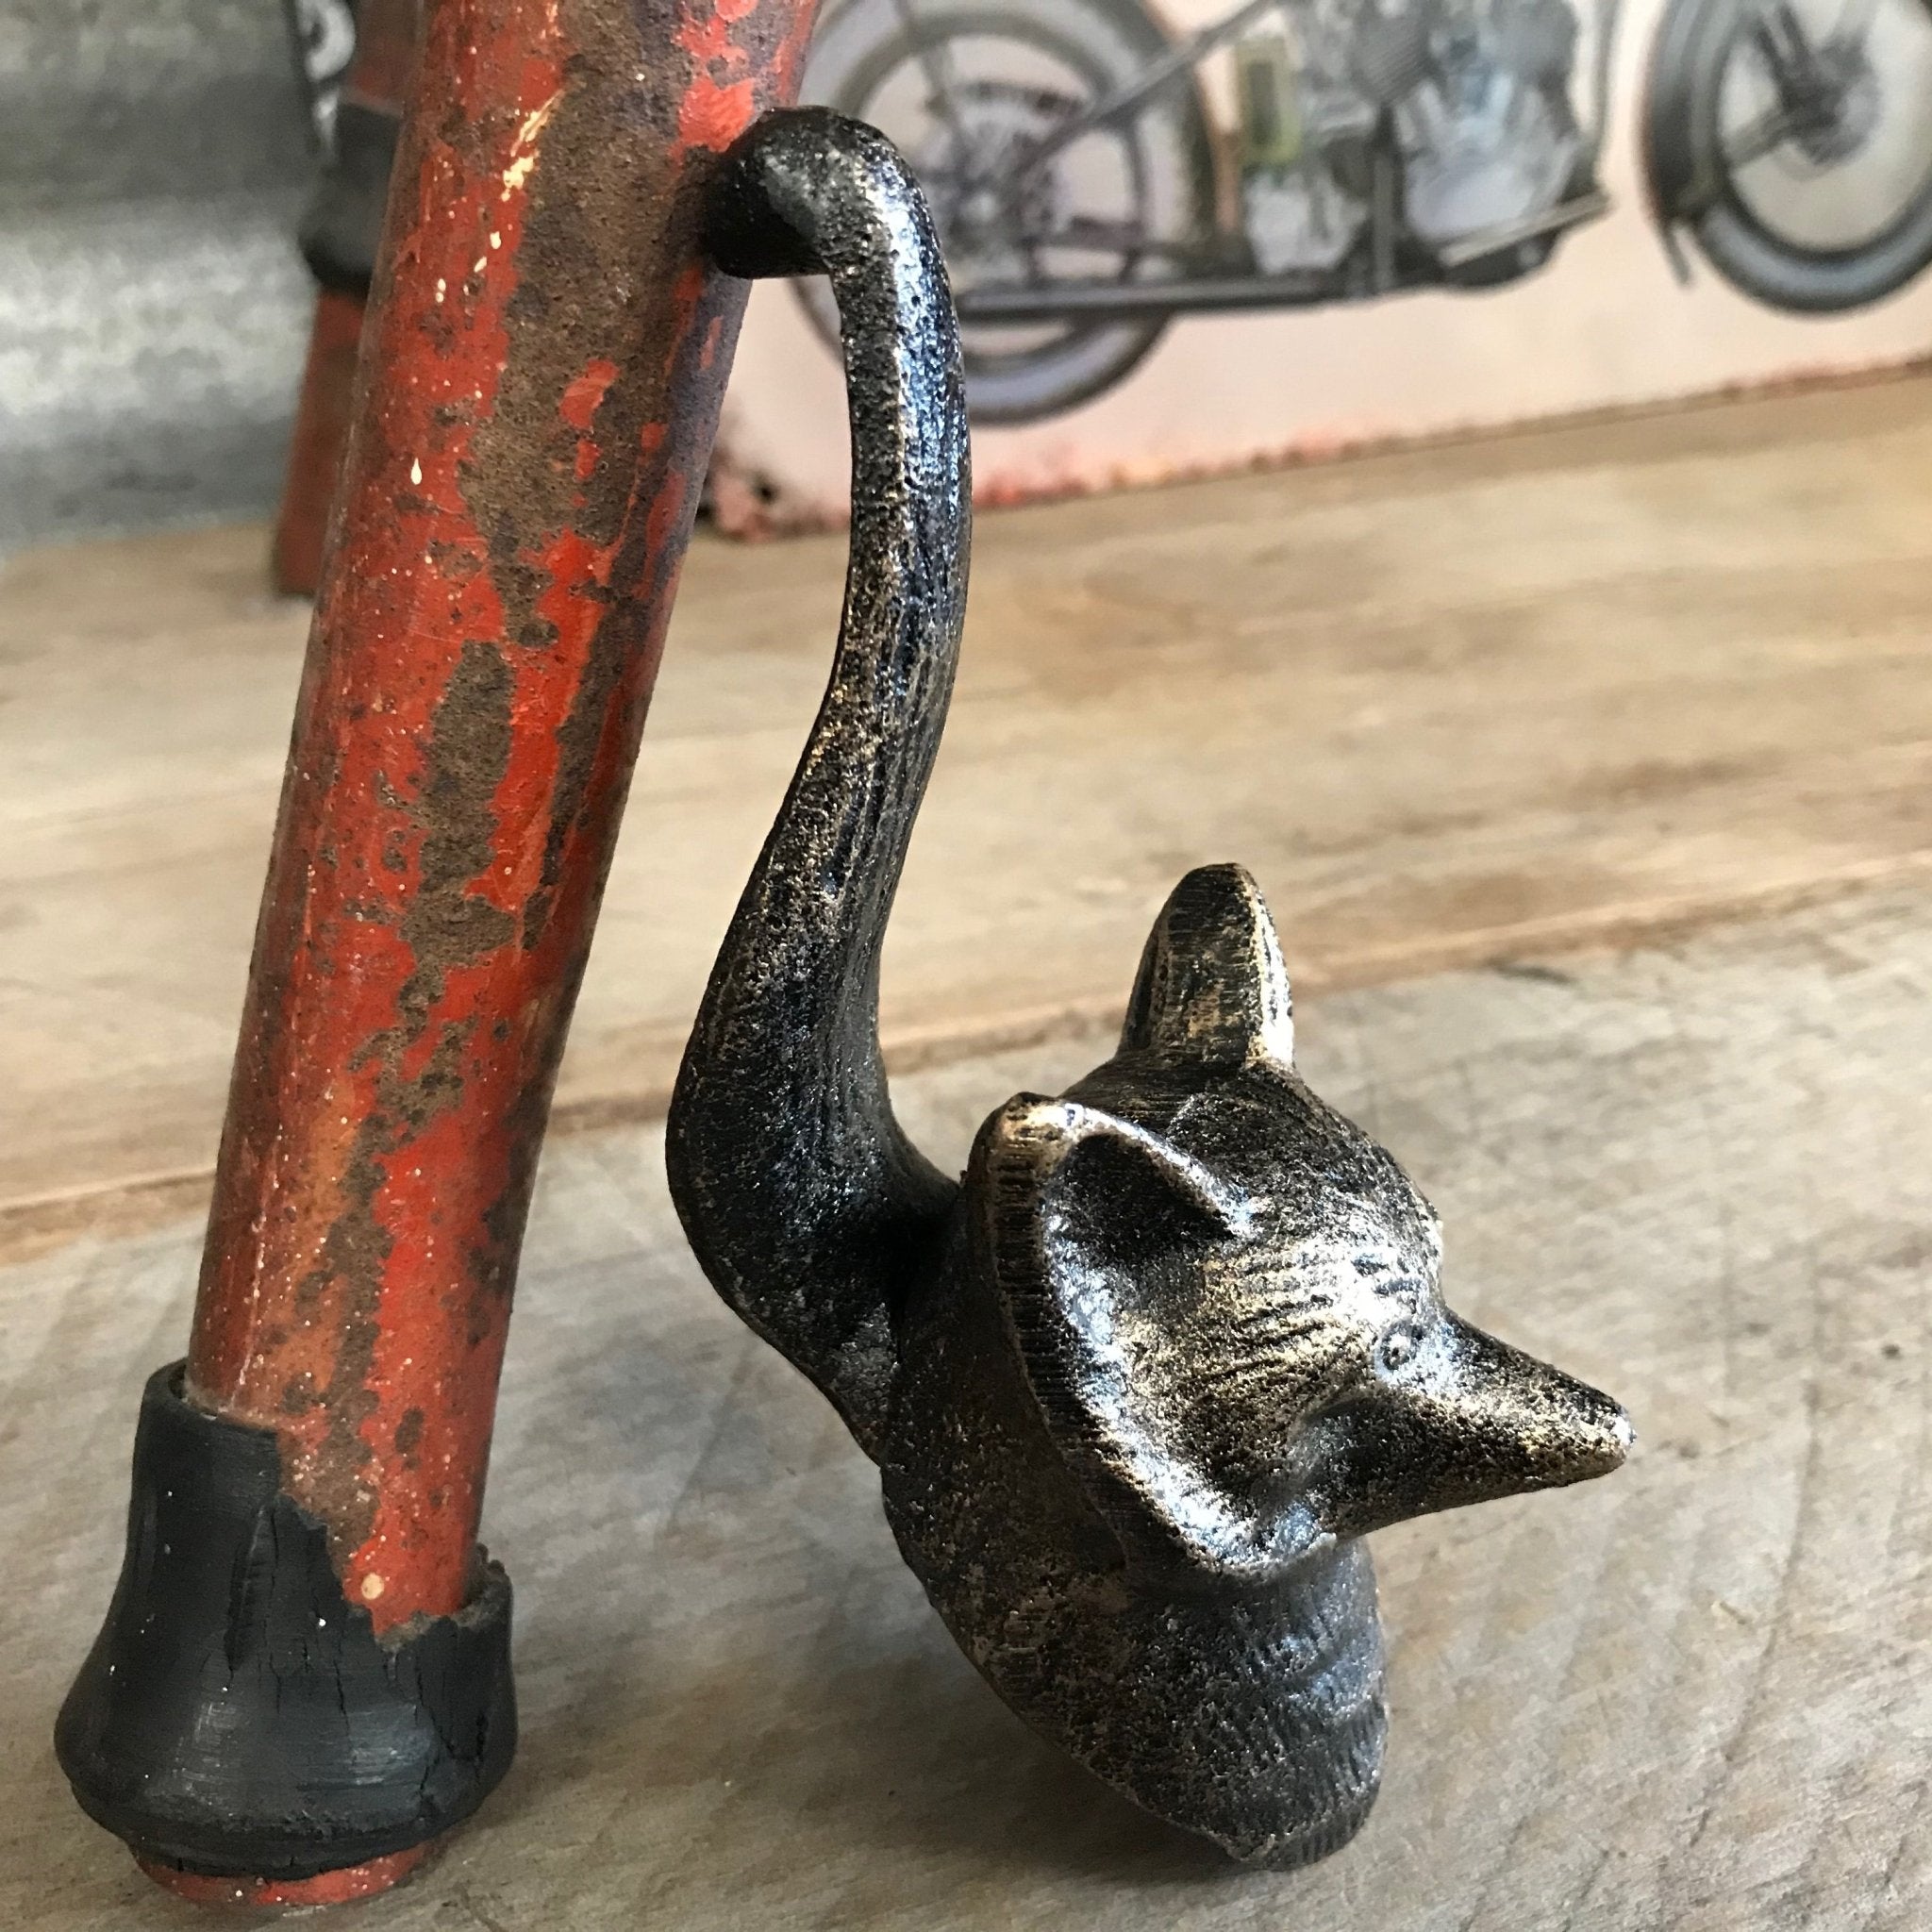 Fox cast iron wall mount hook